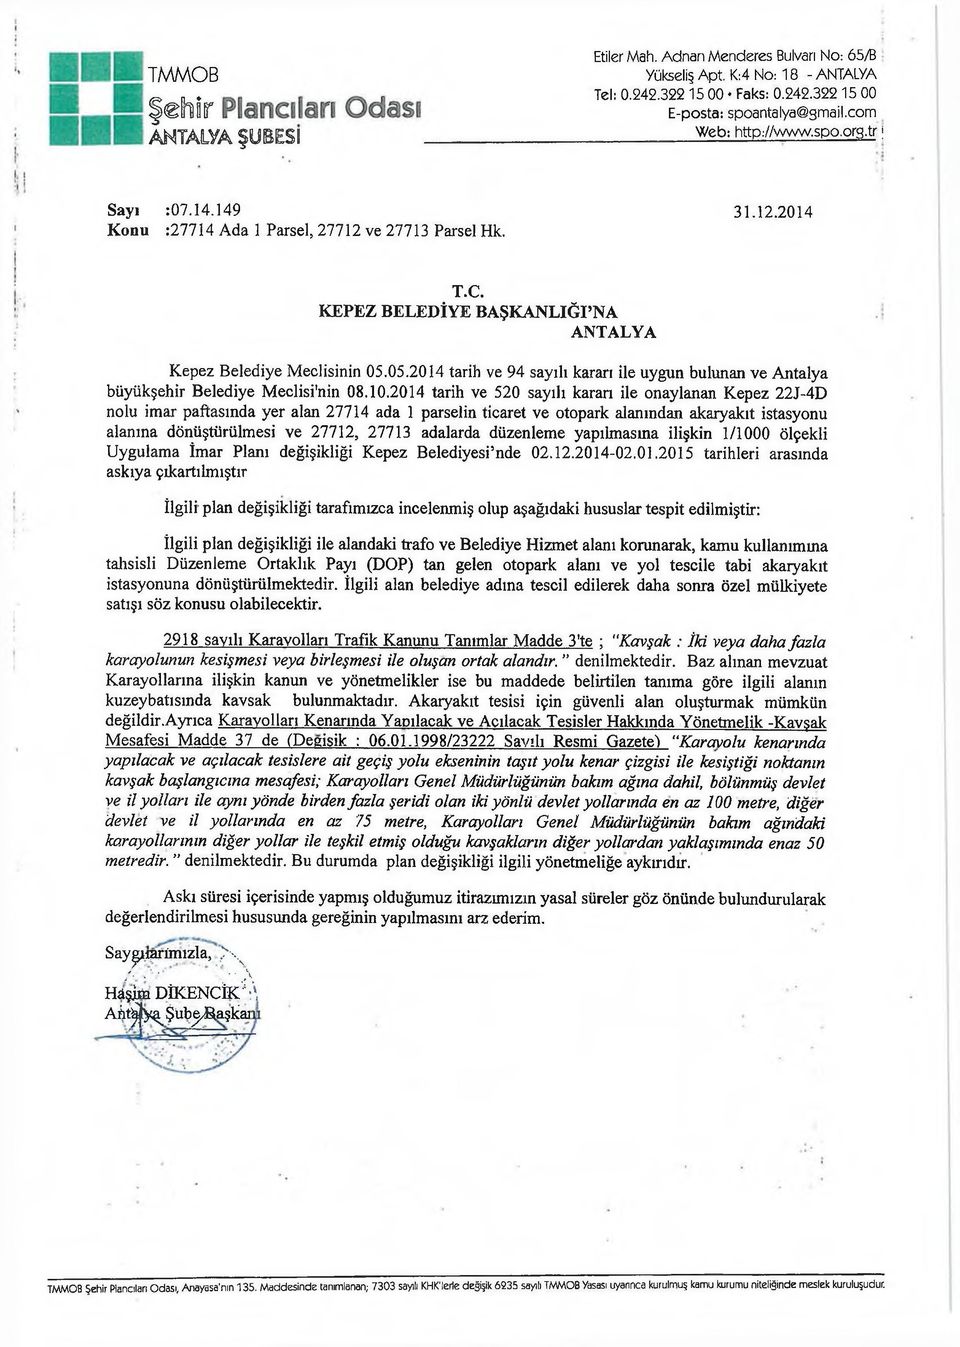 05.2014 tarih ve 94 sayılı kararı ile uygun bulunan ve Antalya büyükşehir Belediye Meclisi'nin 08.10.